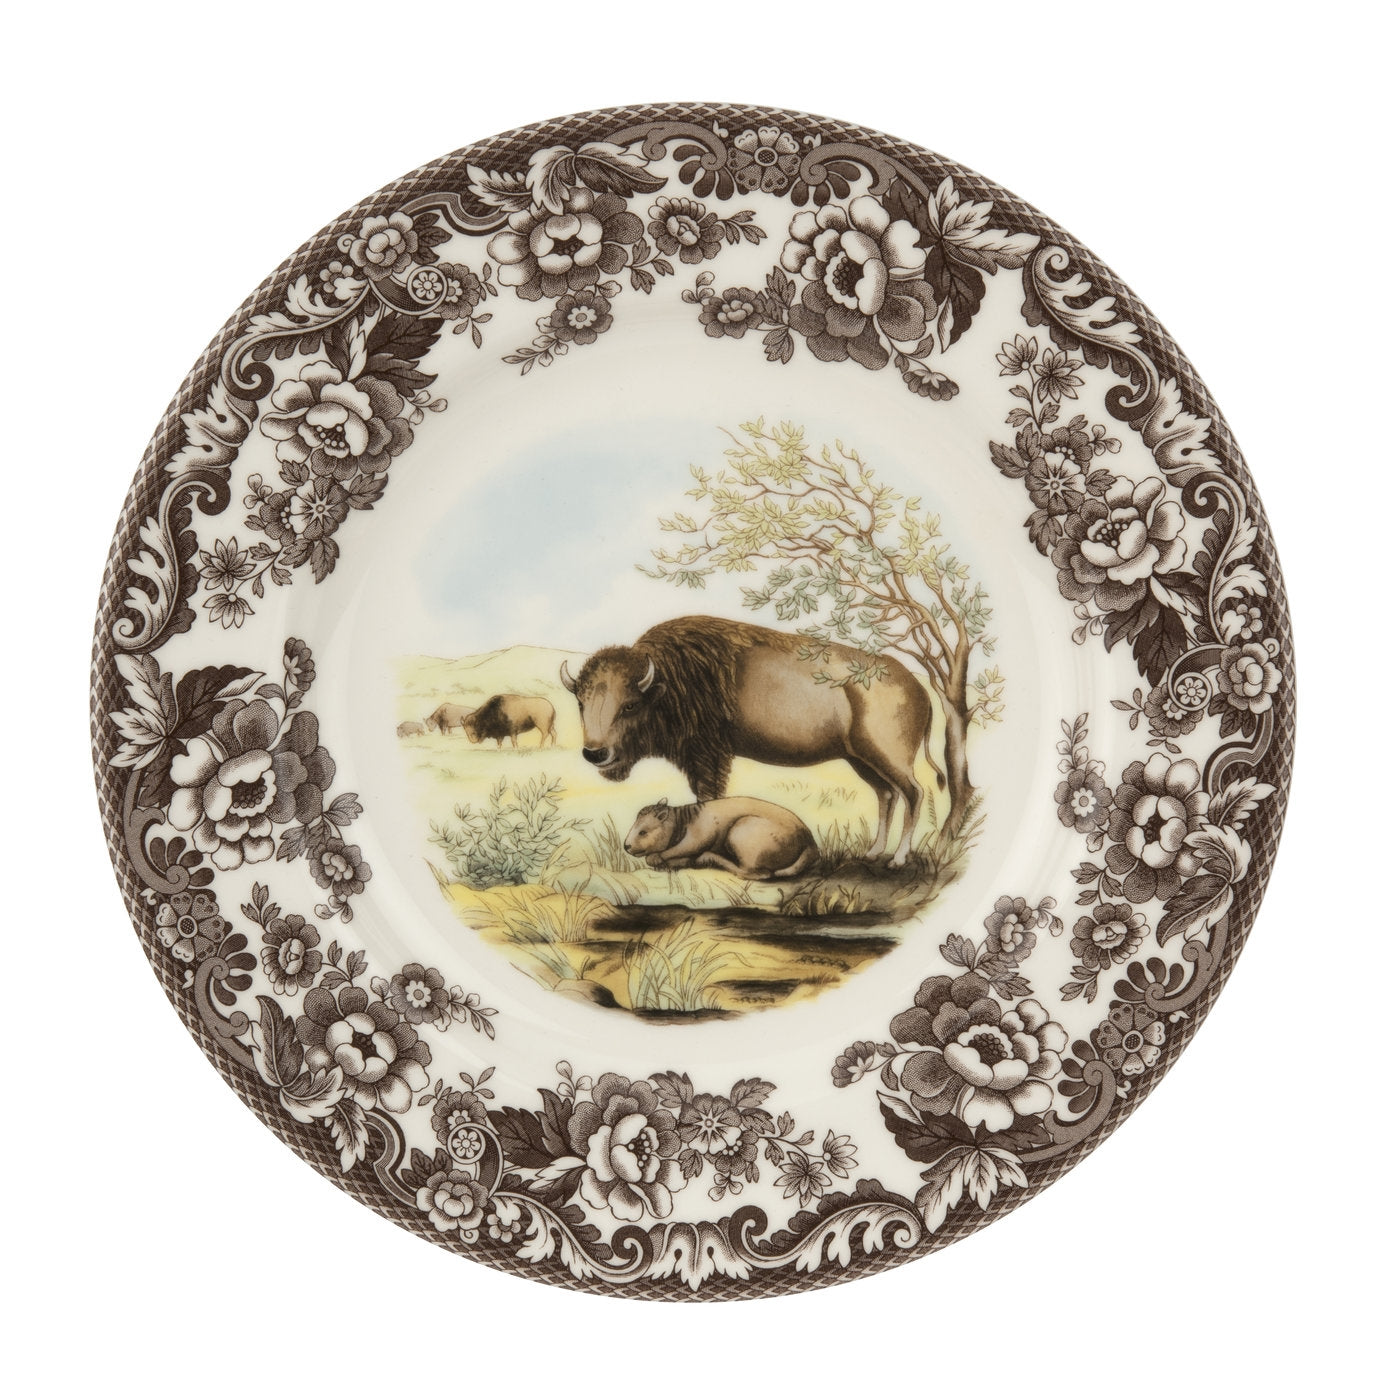 Spode Woodland Dinner Plate, Bison